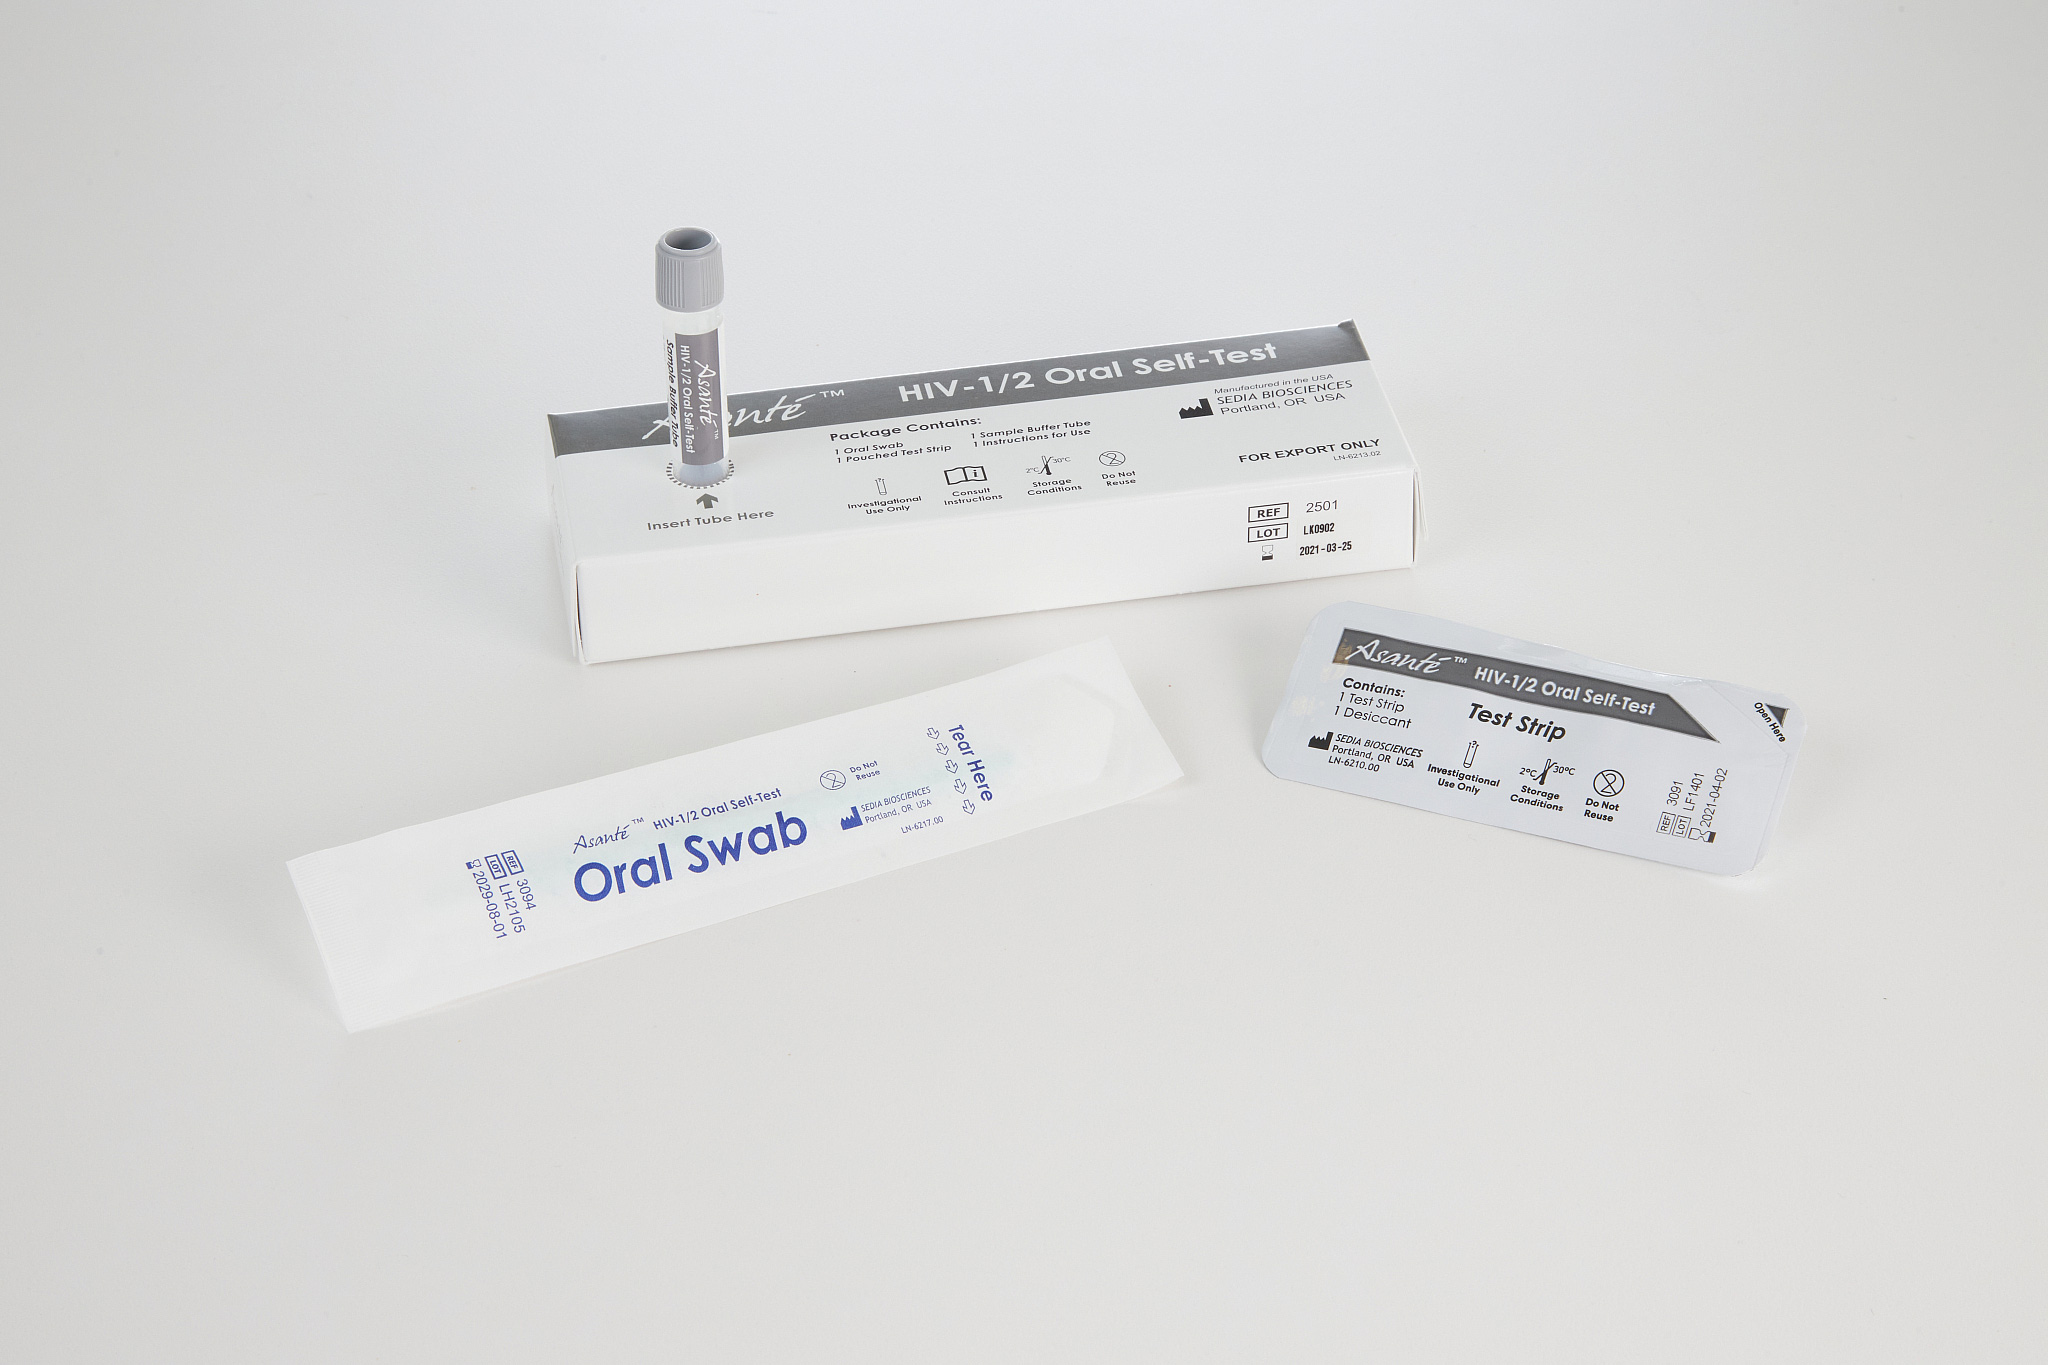 HIV-1-2-Oral-Self-Test-1